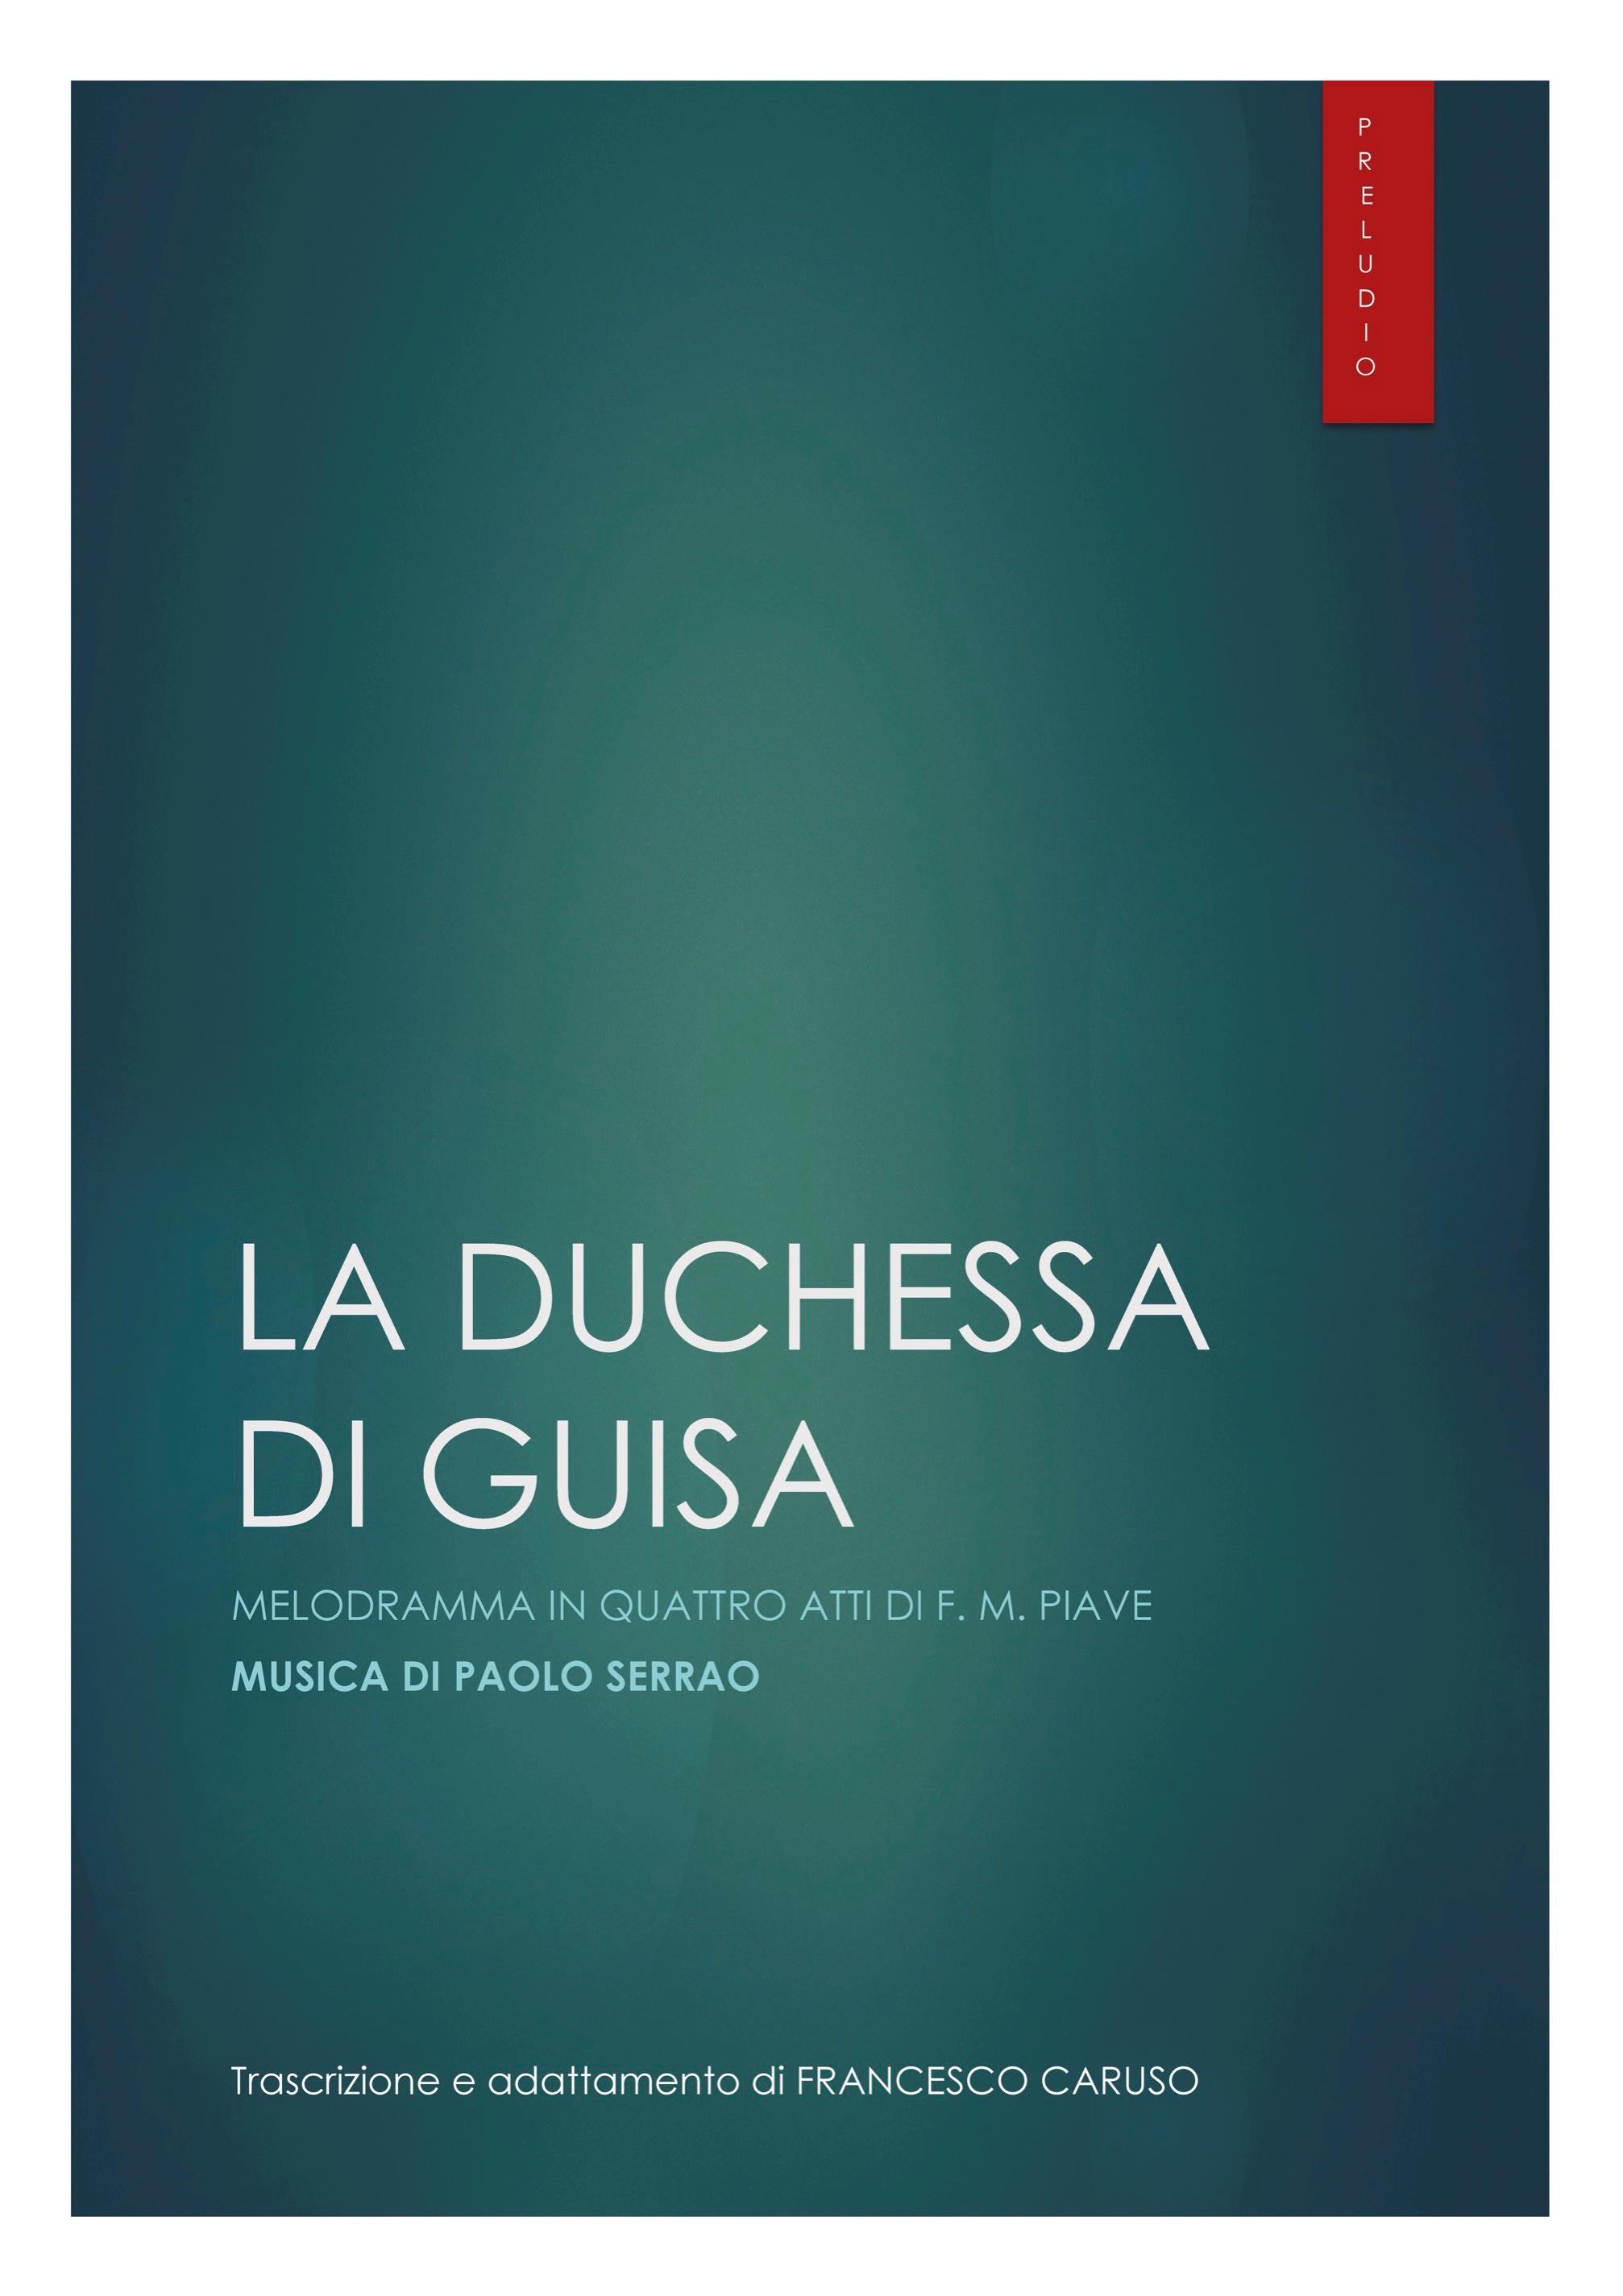 P. SERRAO - Preludio dall'Opera "La Duchessa di Guisa"